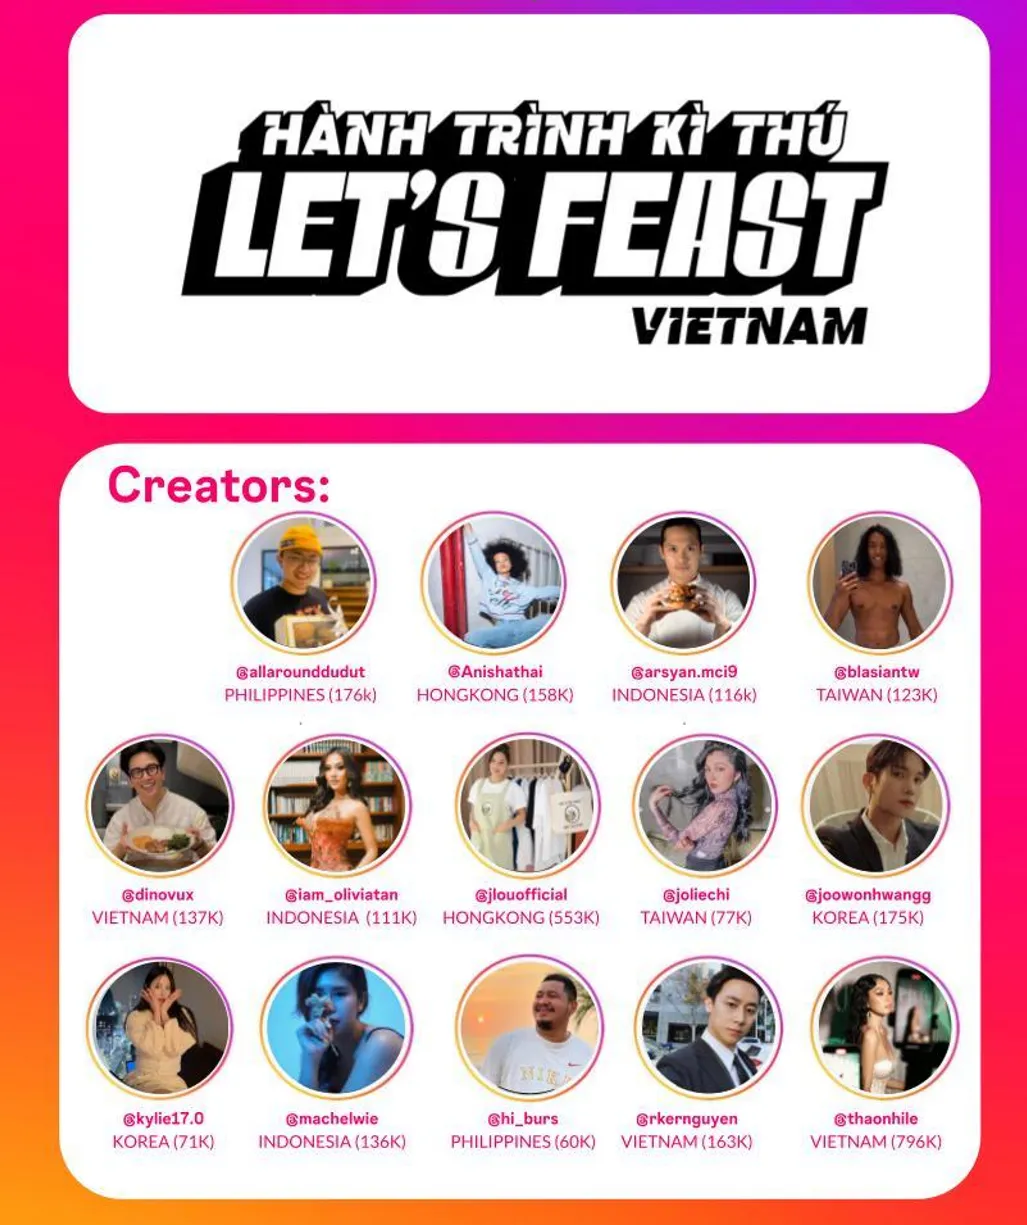 Meta (Facebook) hợp tác cùng BHD ra mắt chương trình Let's Feast Vietnam - Hành Trình Kỳ Thú nhằm quảng bá văn hóa, du lịch, ẩm thực Việt Nam với thế giới                              